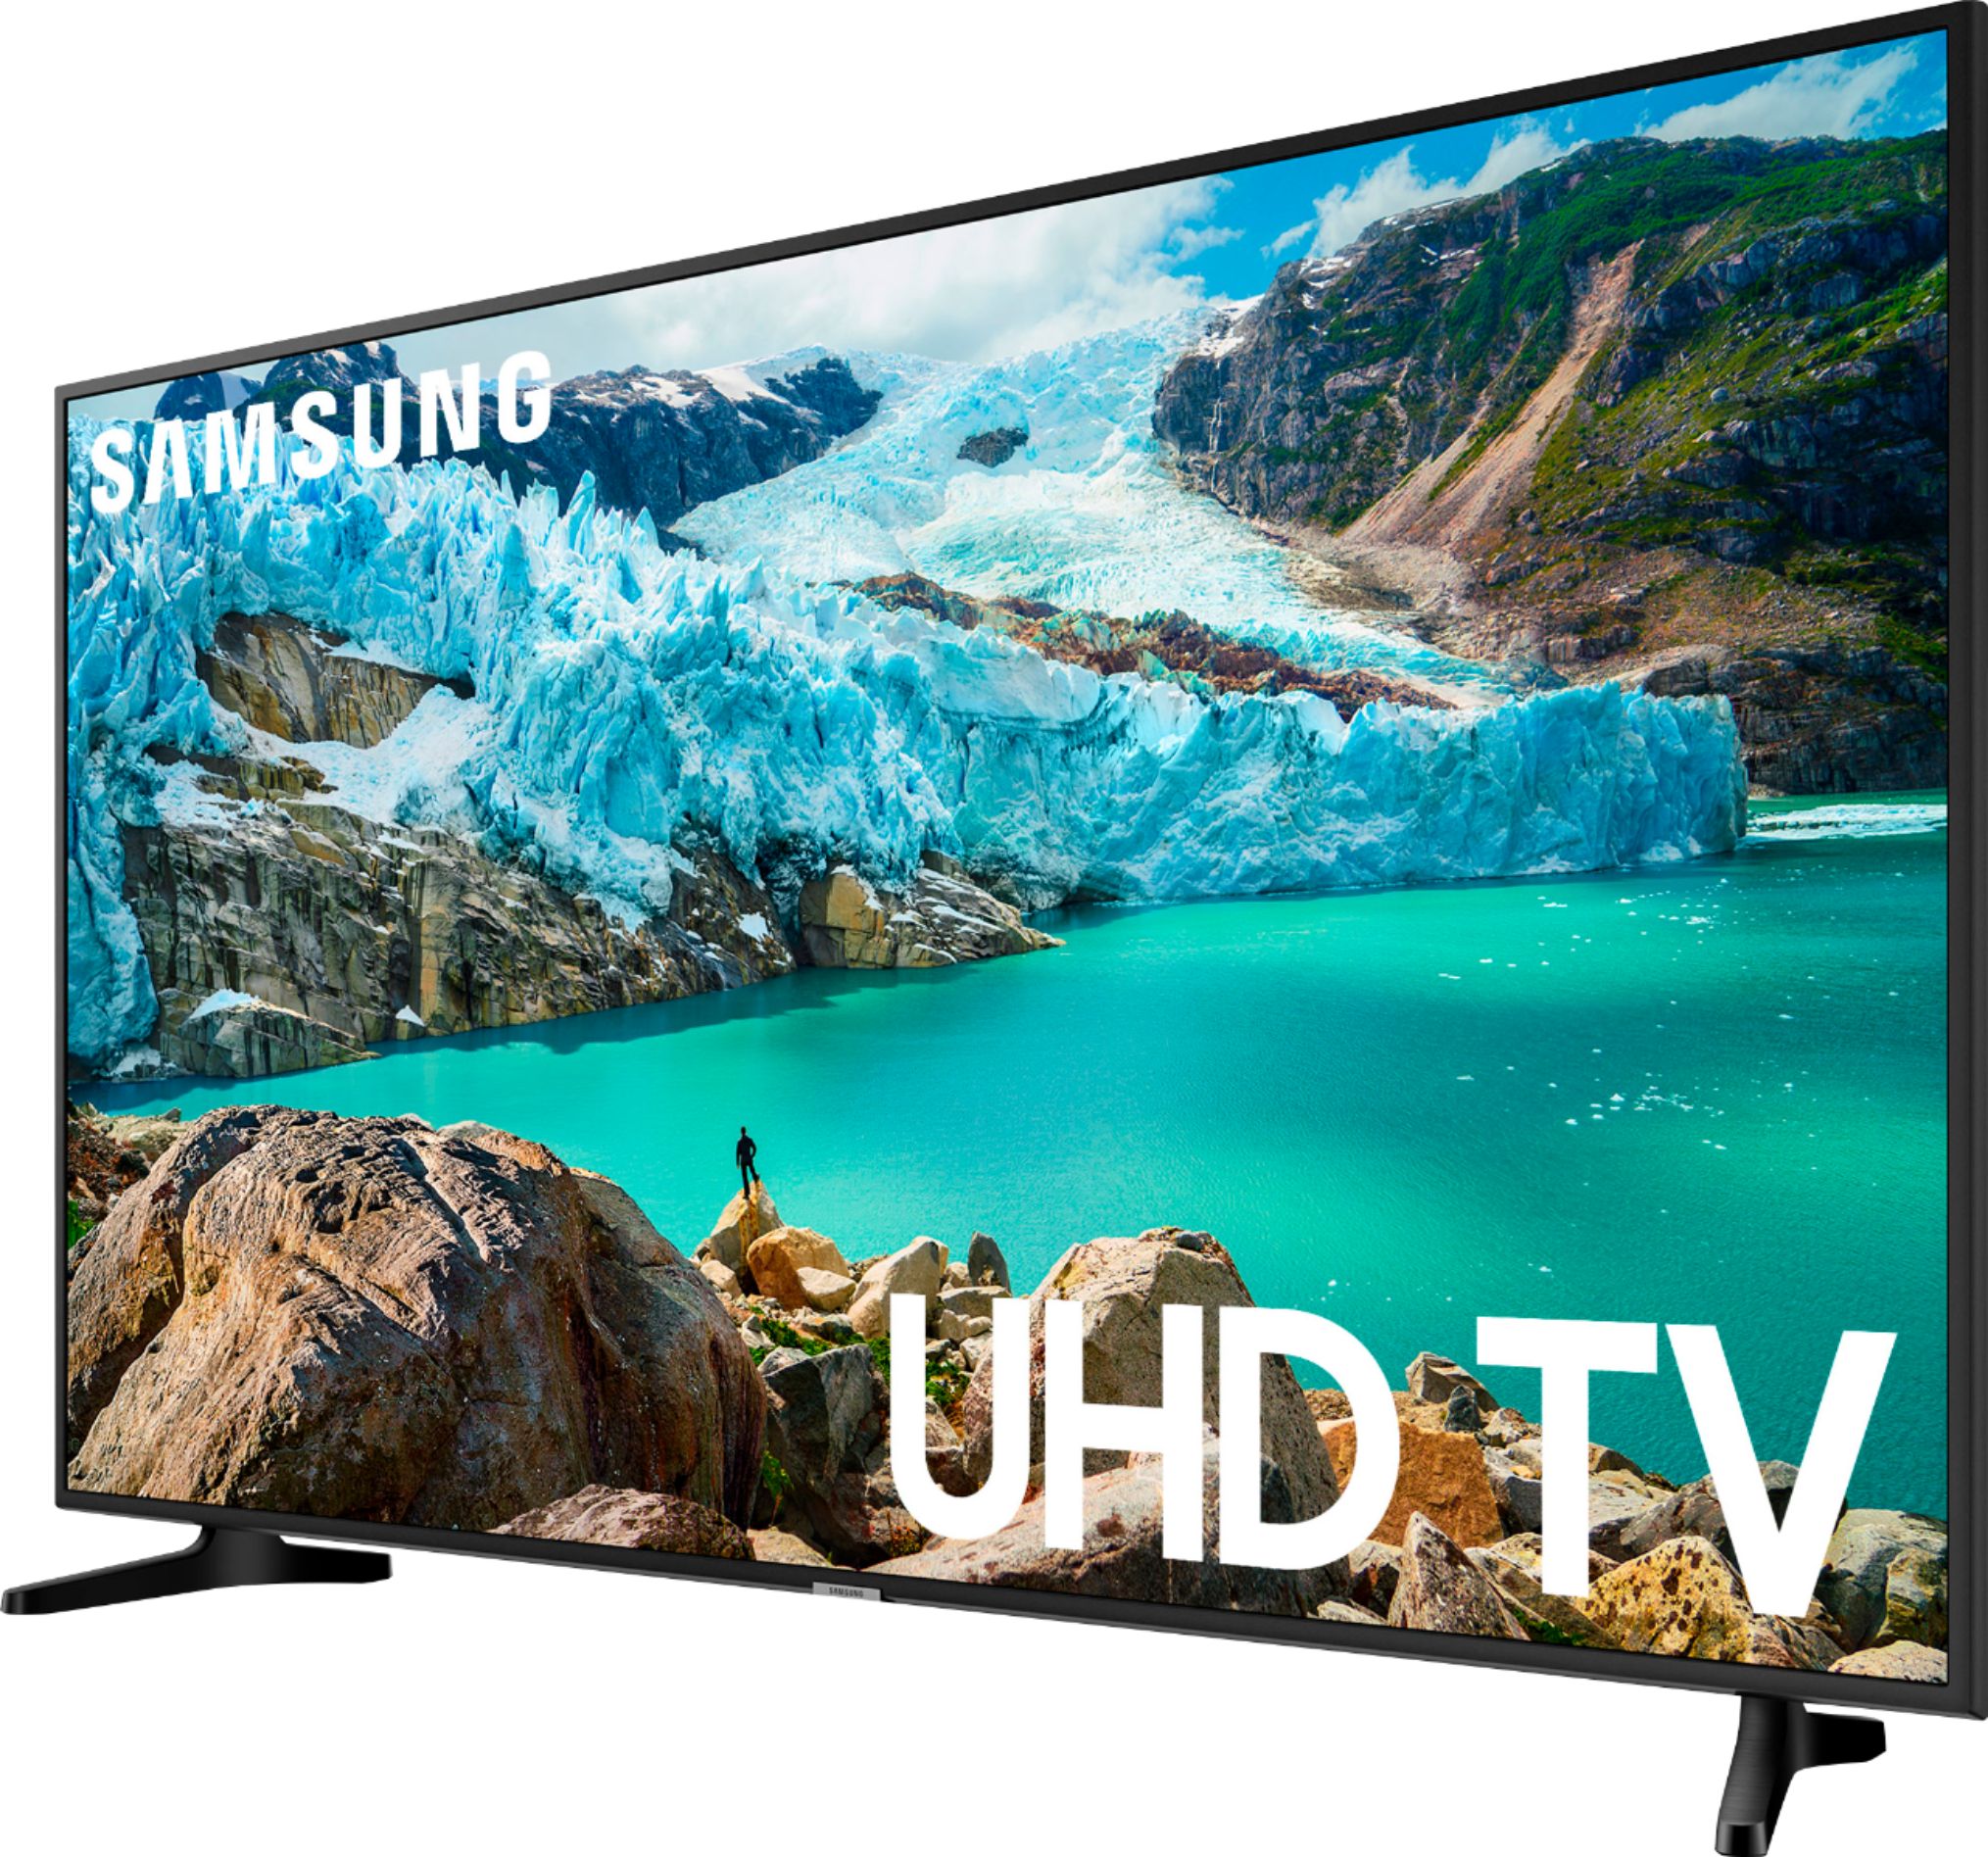 Left View: Samsung - 43" Class 6 Series LED 4K UHD Smart Tizen TV